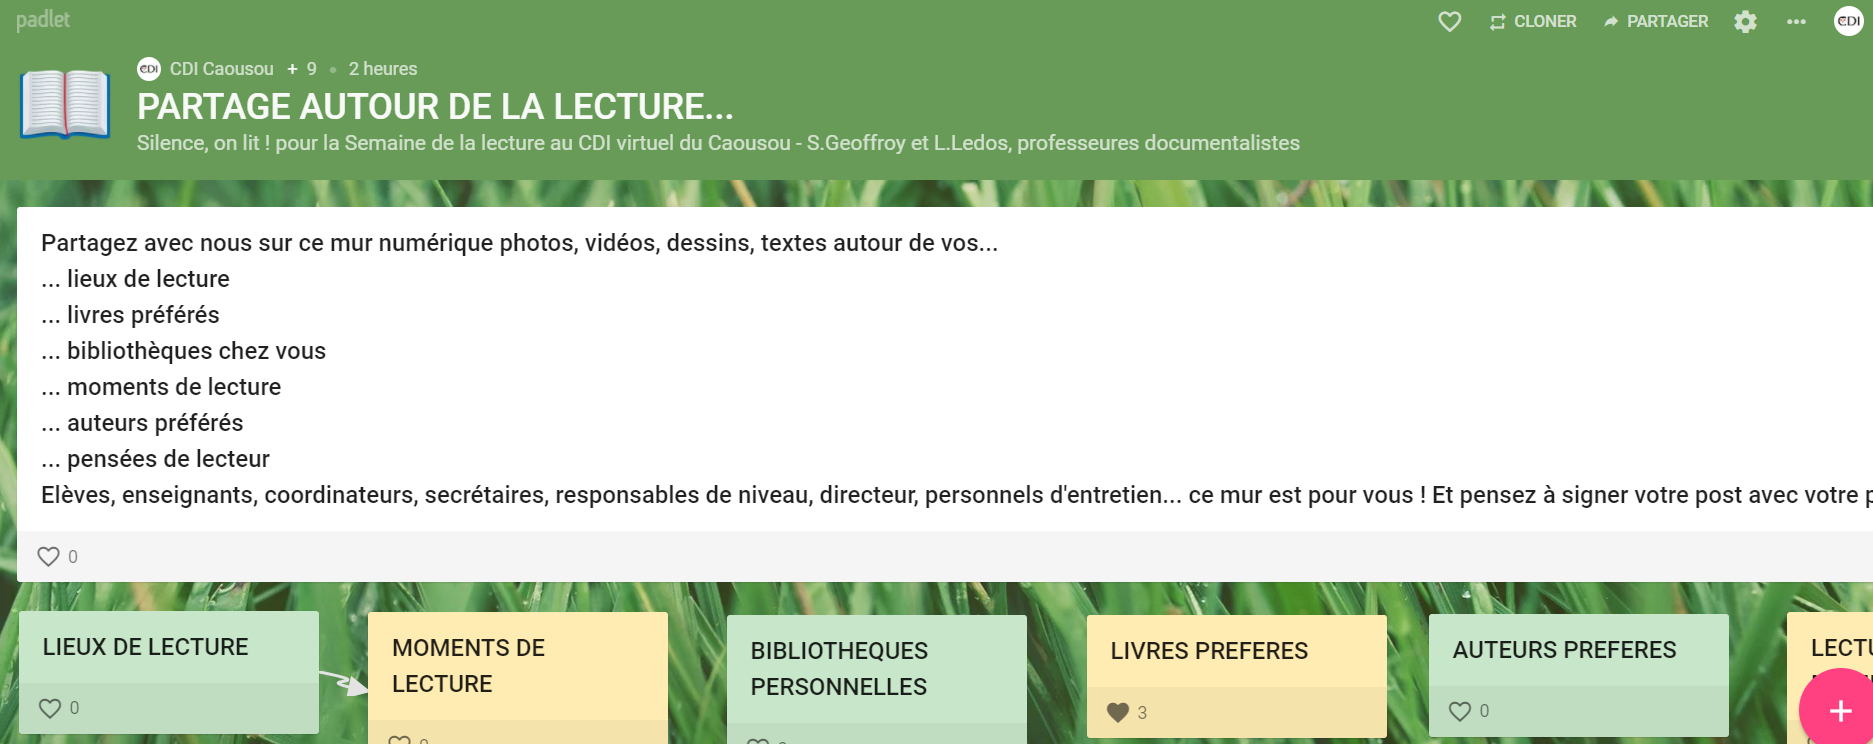 padlet_partage_autour_de_la_lecture.png